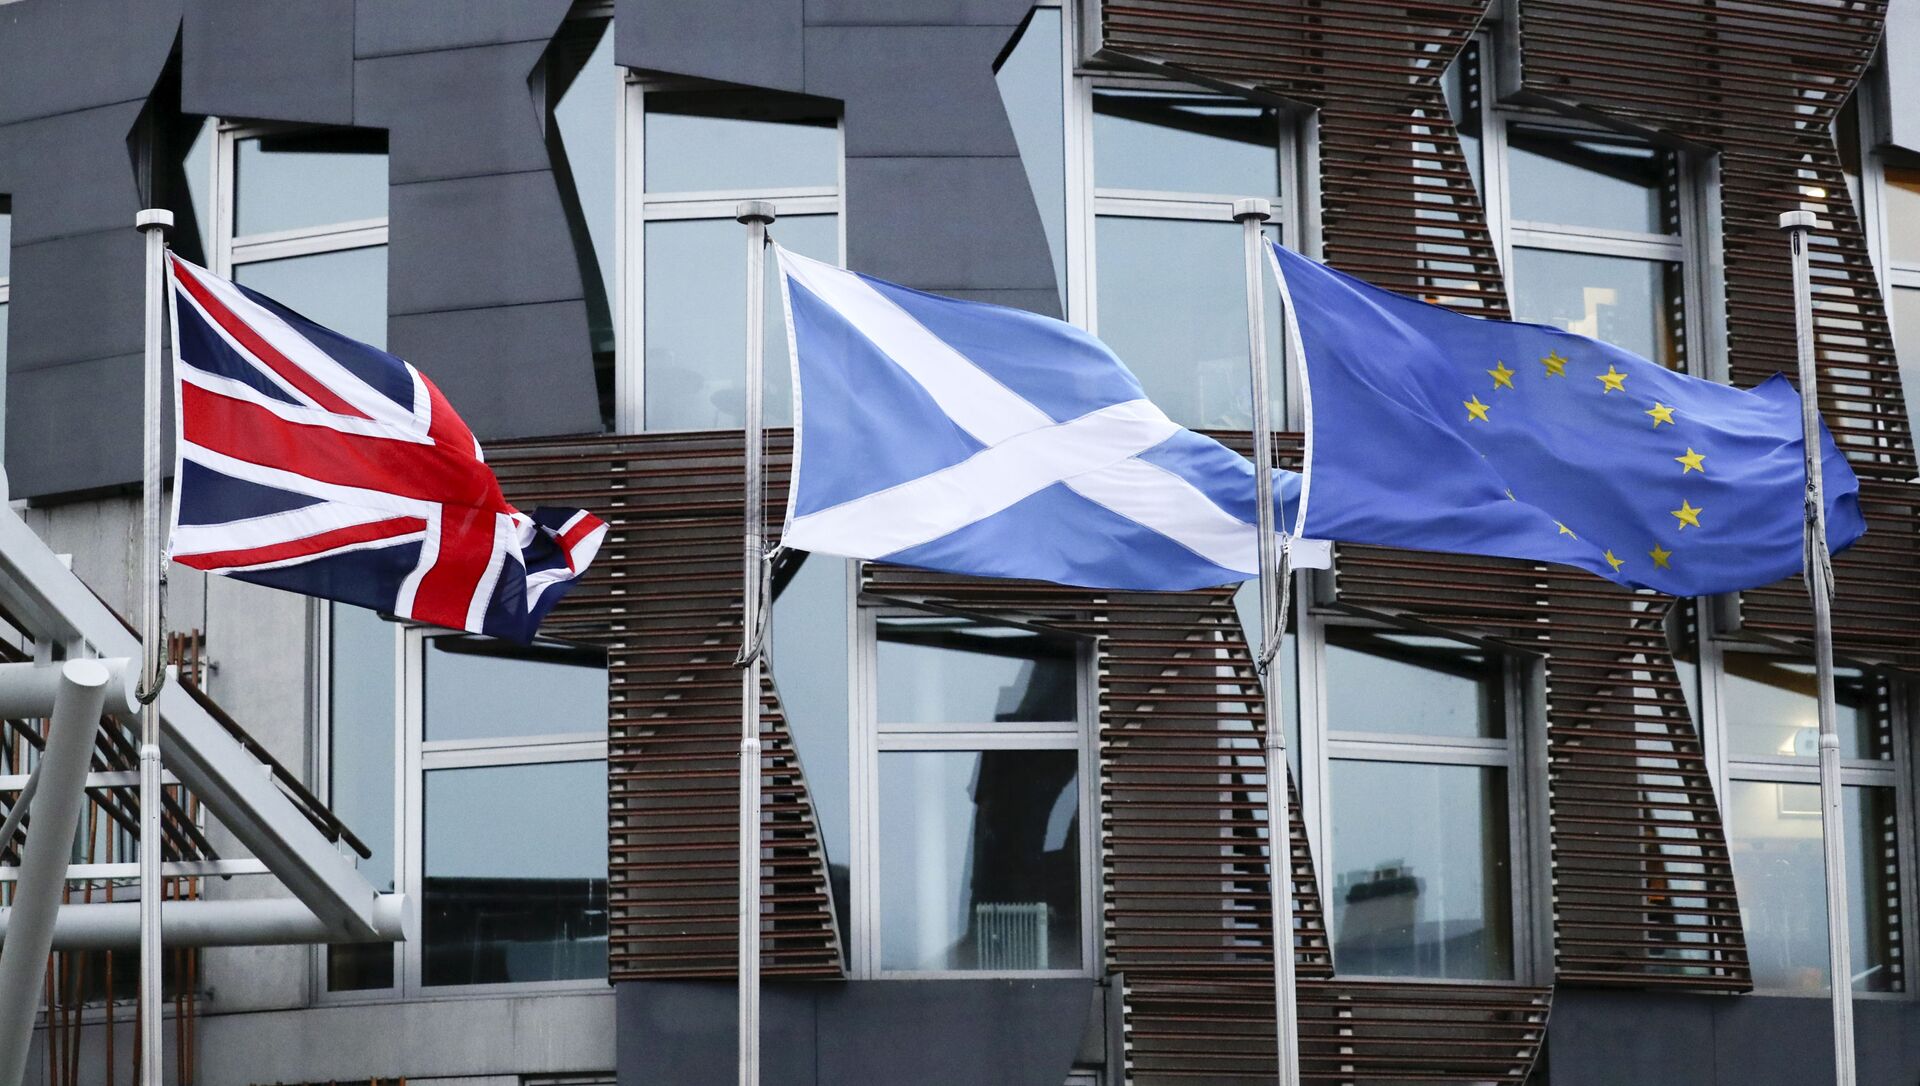 Флаги Великобритании, Шотландии и ЕС у здания парламента в Эдинбурге - Sputnik Азербайджан, 1920, 13.04.2021